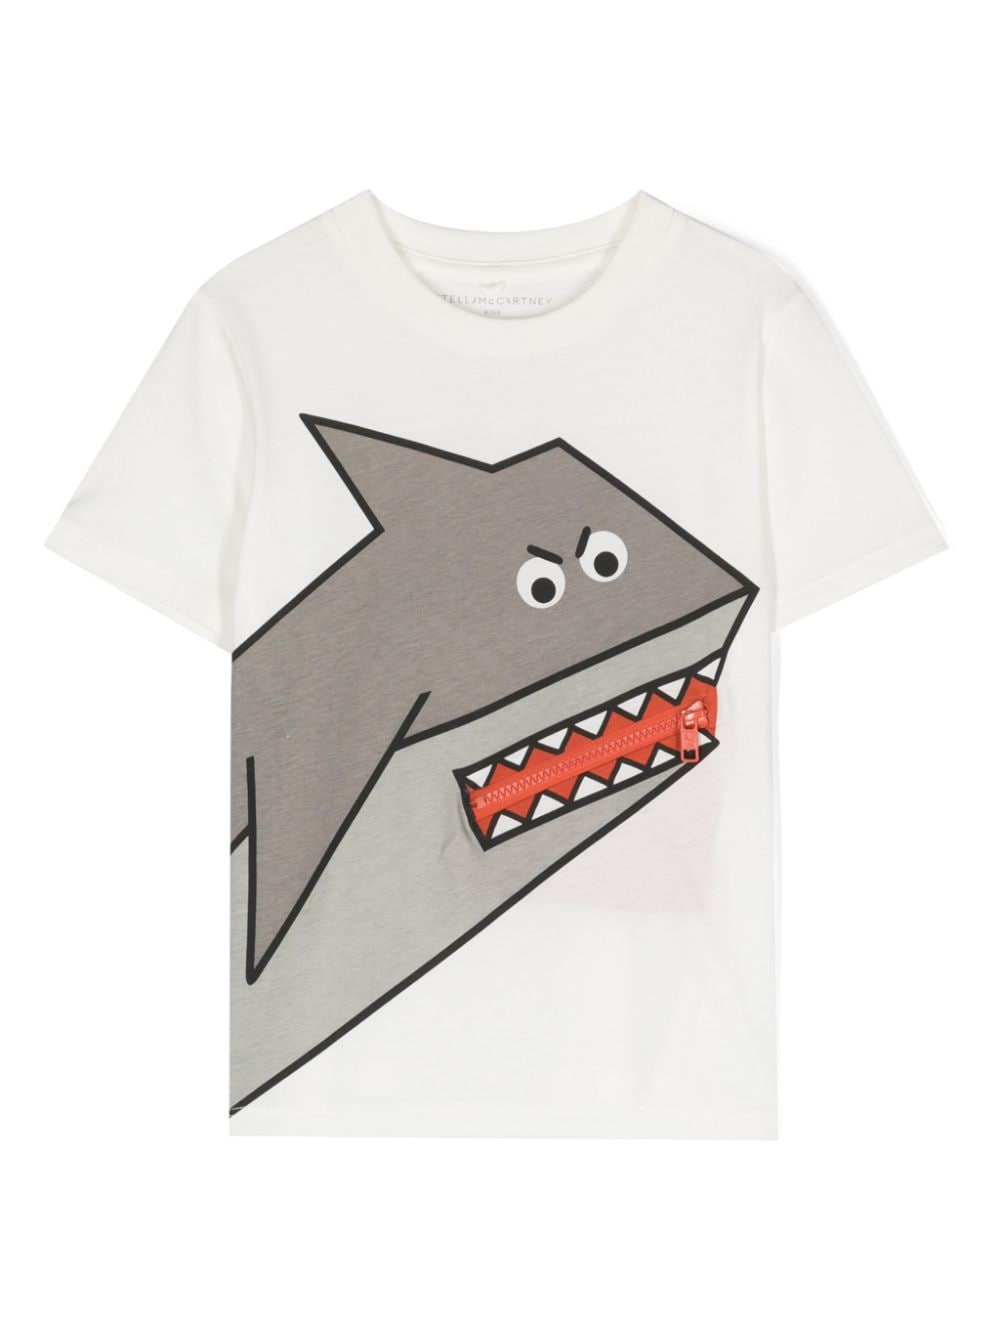 T-shirt bianca per bambino con squalo